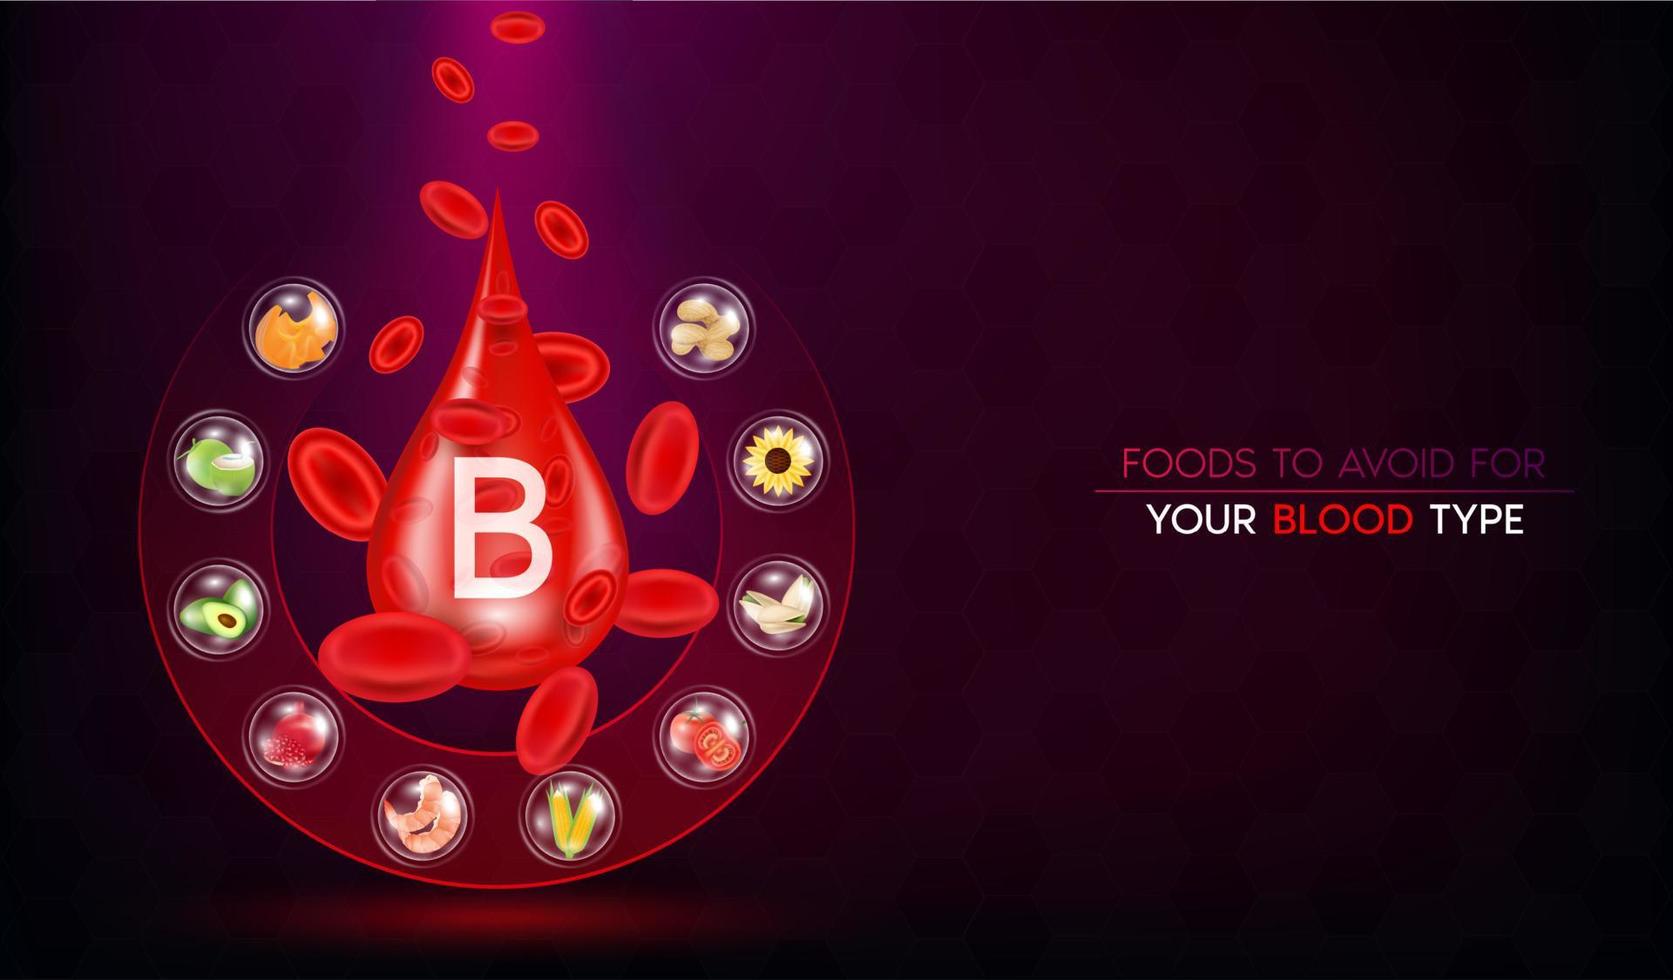 blutgruppe b, zu vermeidende lebensmittel gemüse obst für ihre blutgruppe. medizinisches Ernährungskonzept. realistisch mit 3D-Vektorillustration. auf einem dunkelroten Hintergrund. vektor